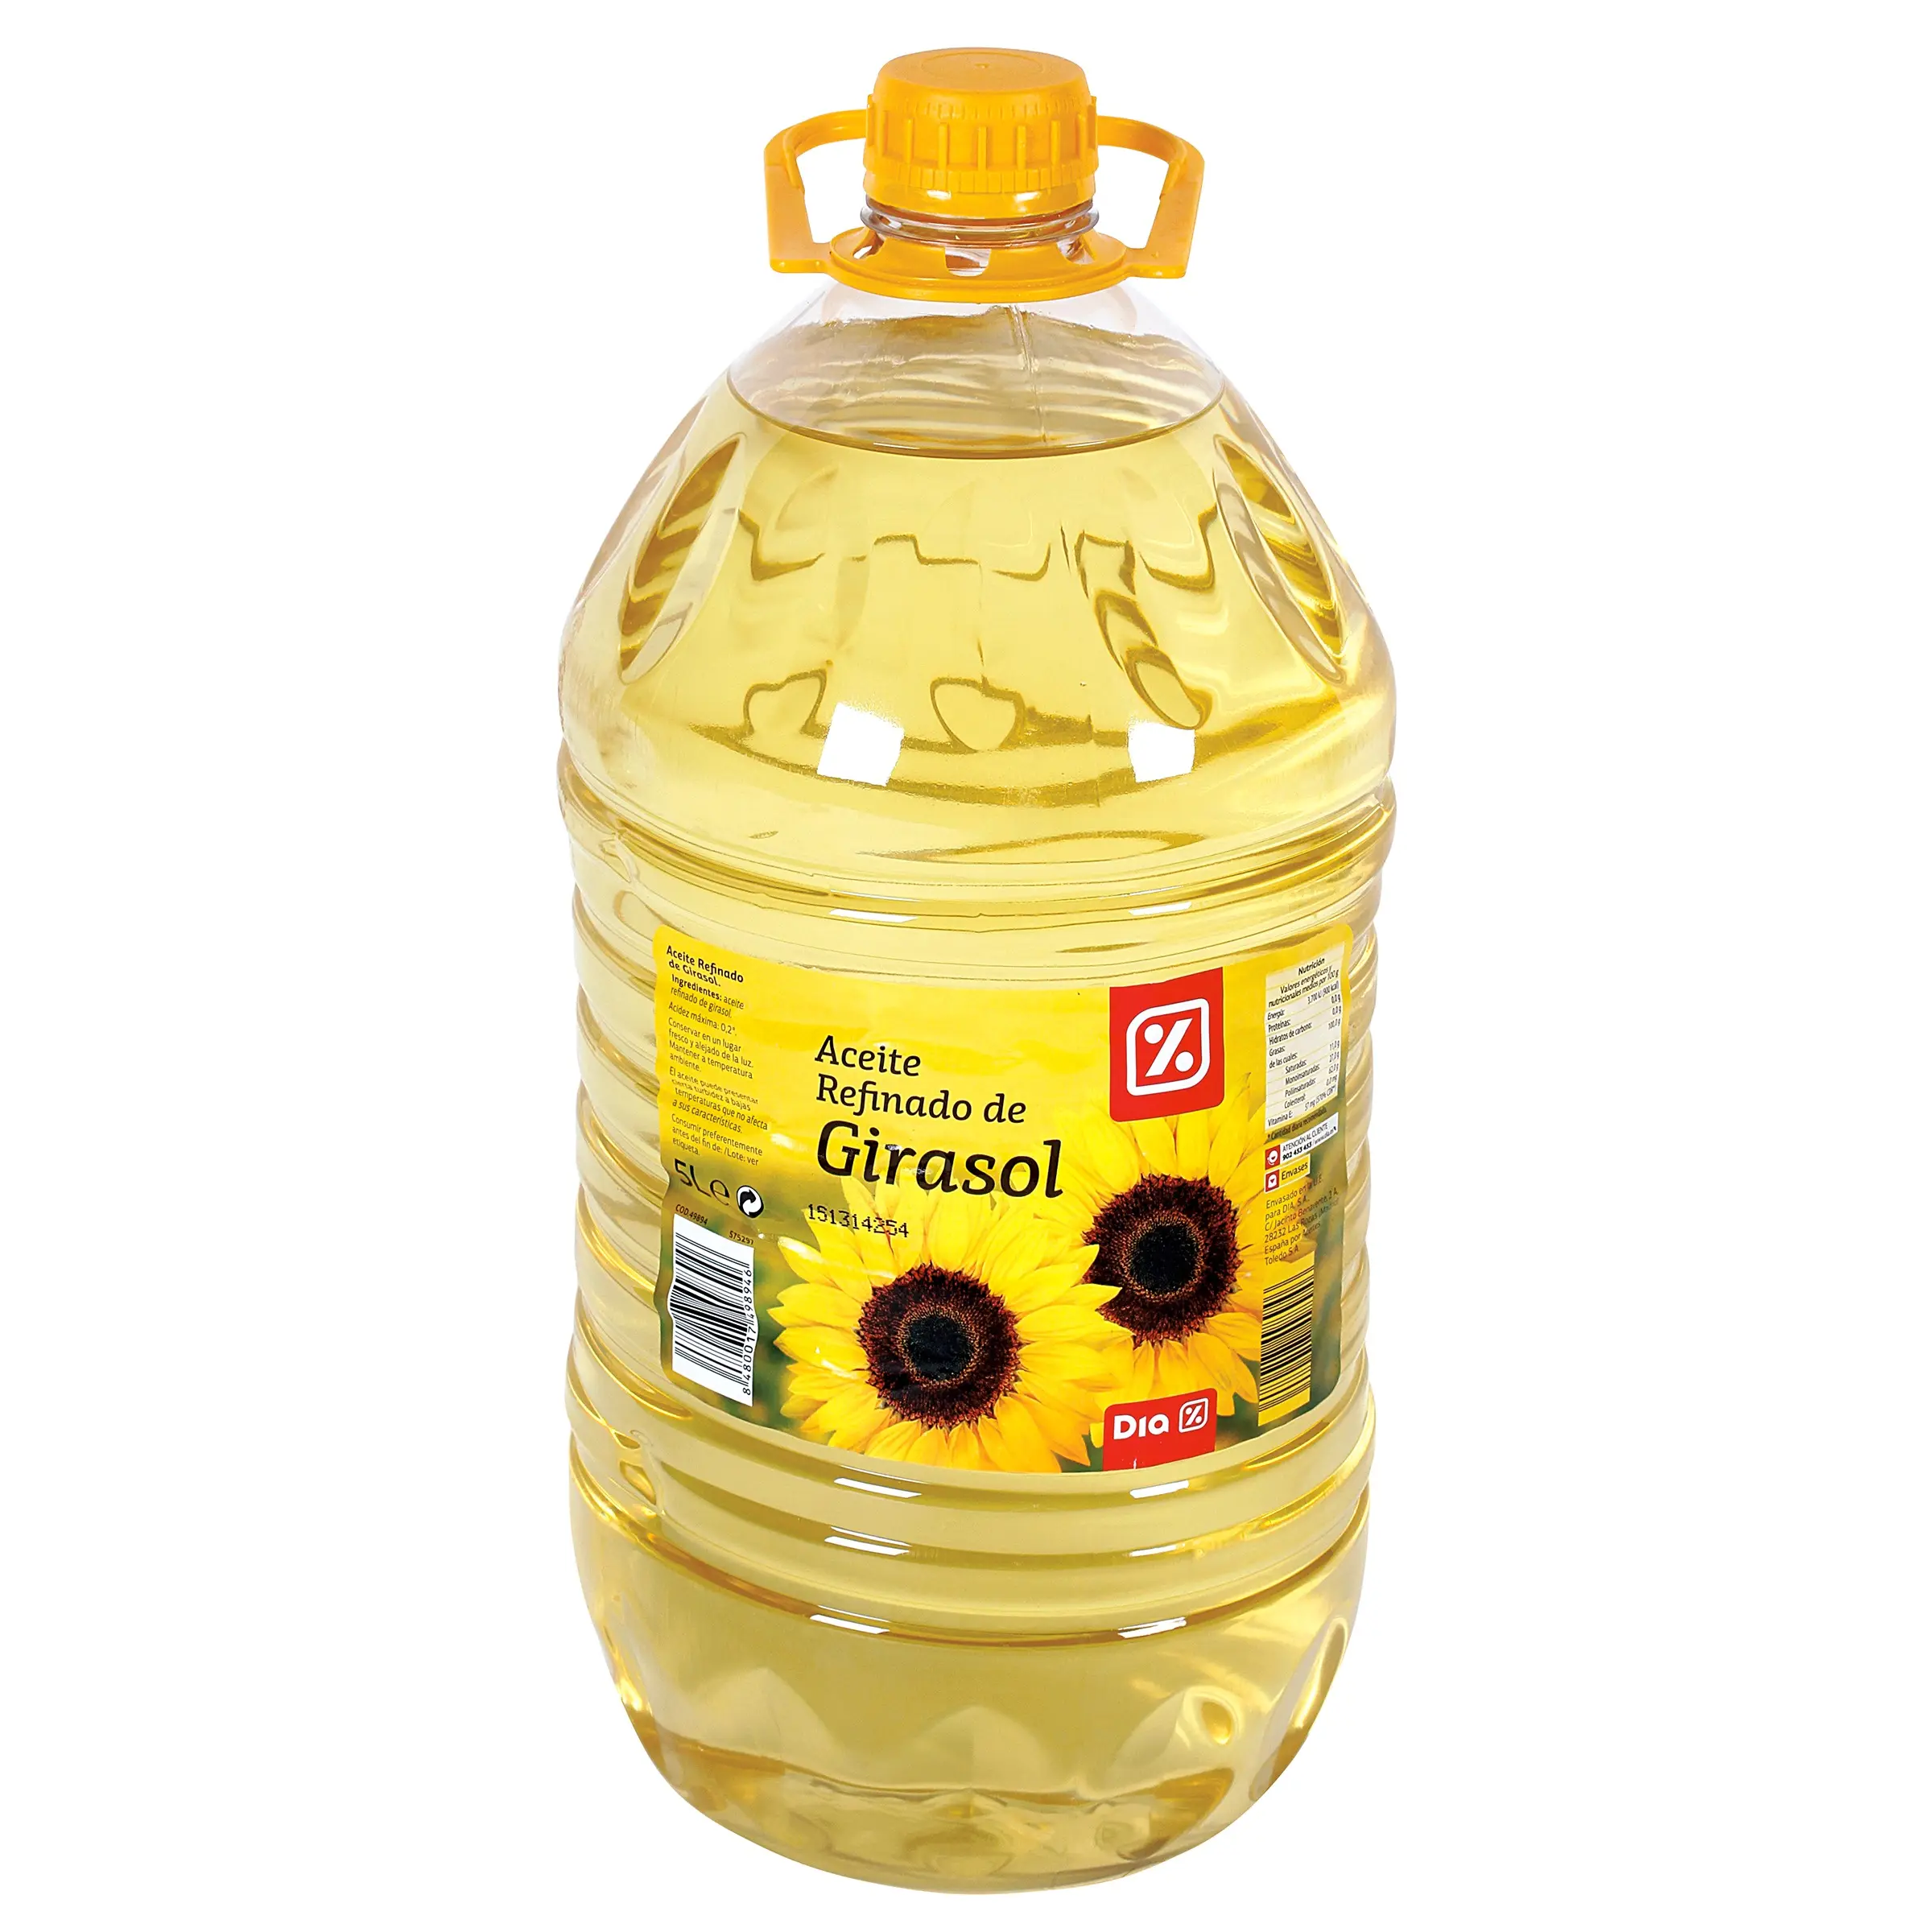 Aceite de girasol y de cocina, aceite de girasol refinado a granel para la venta